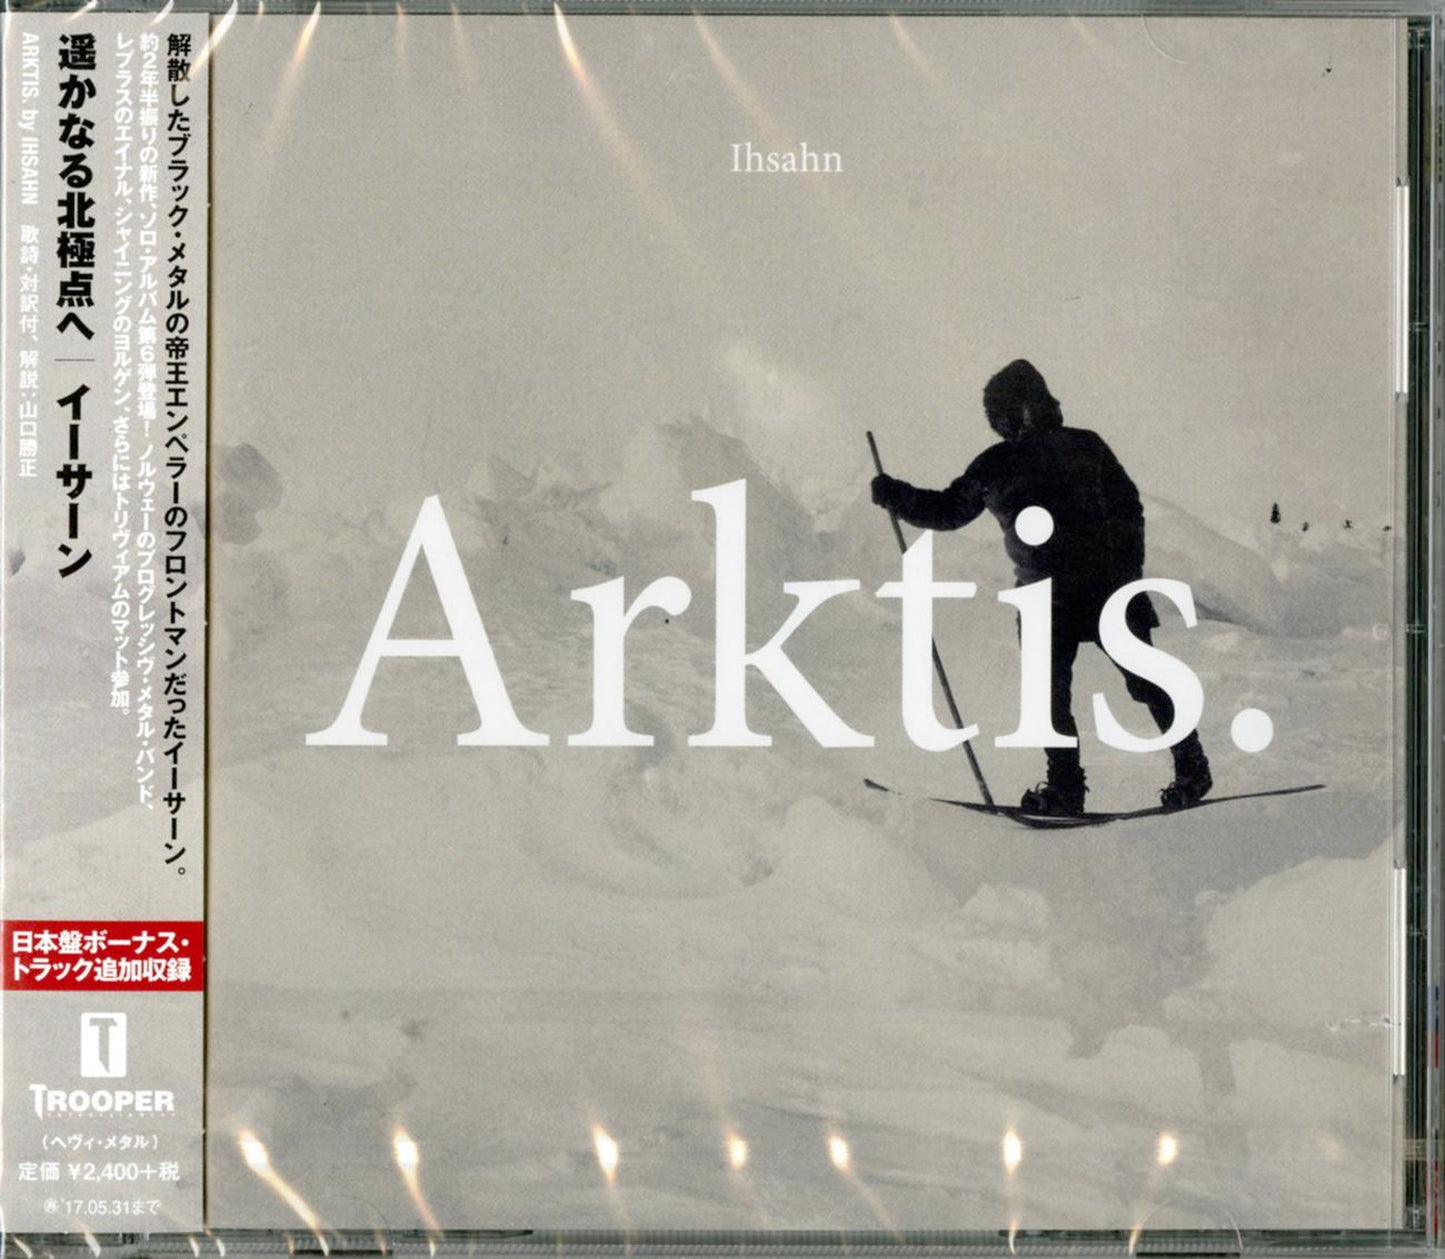 Ihsahn - Arktis - Japan CD